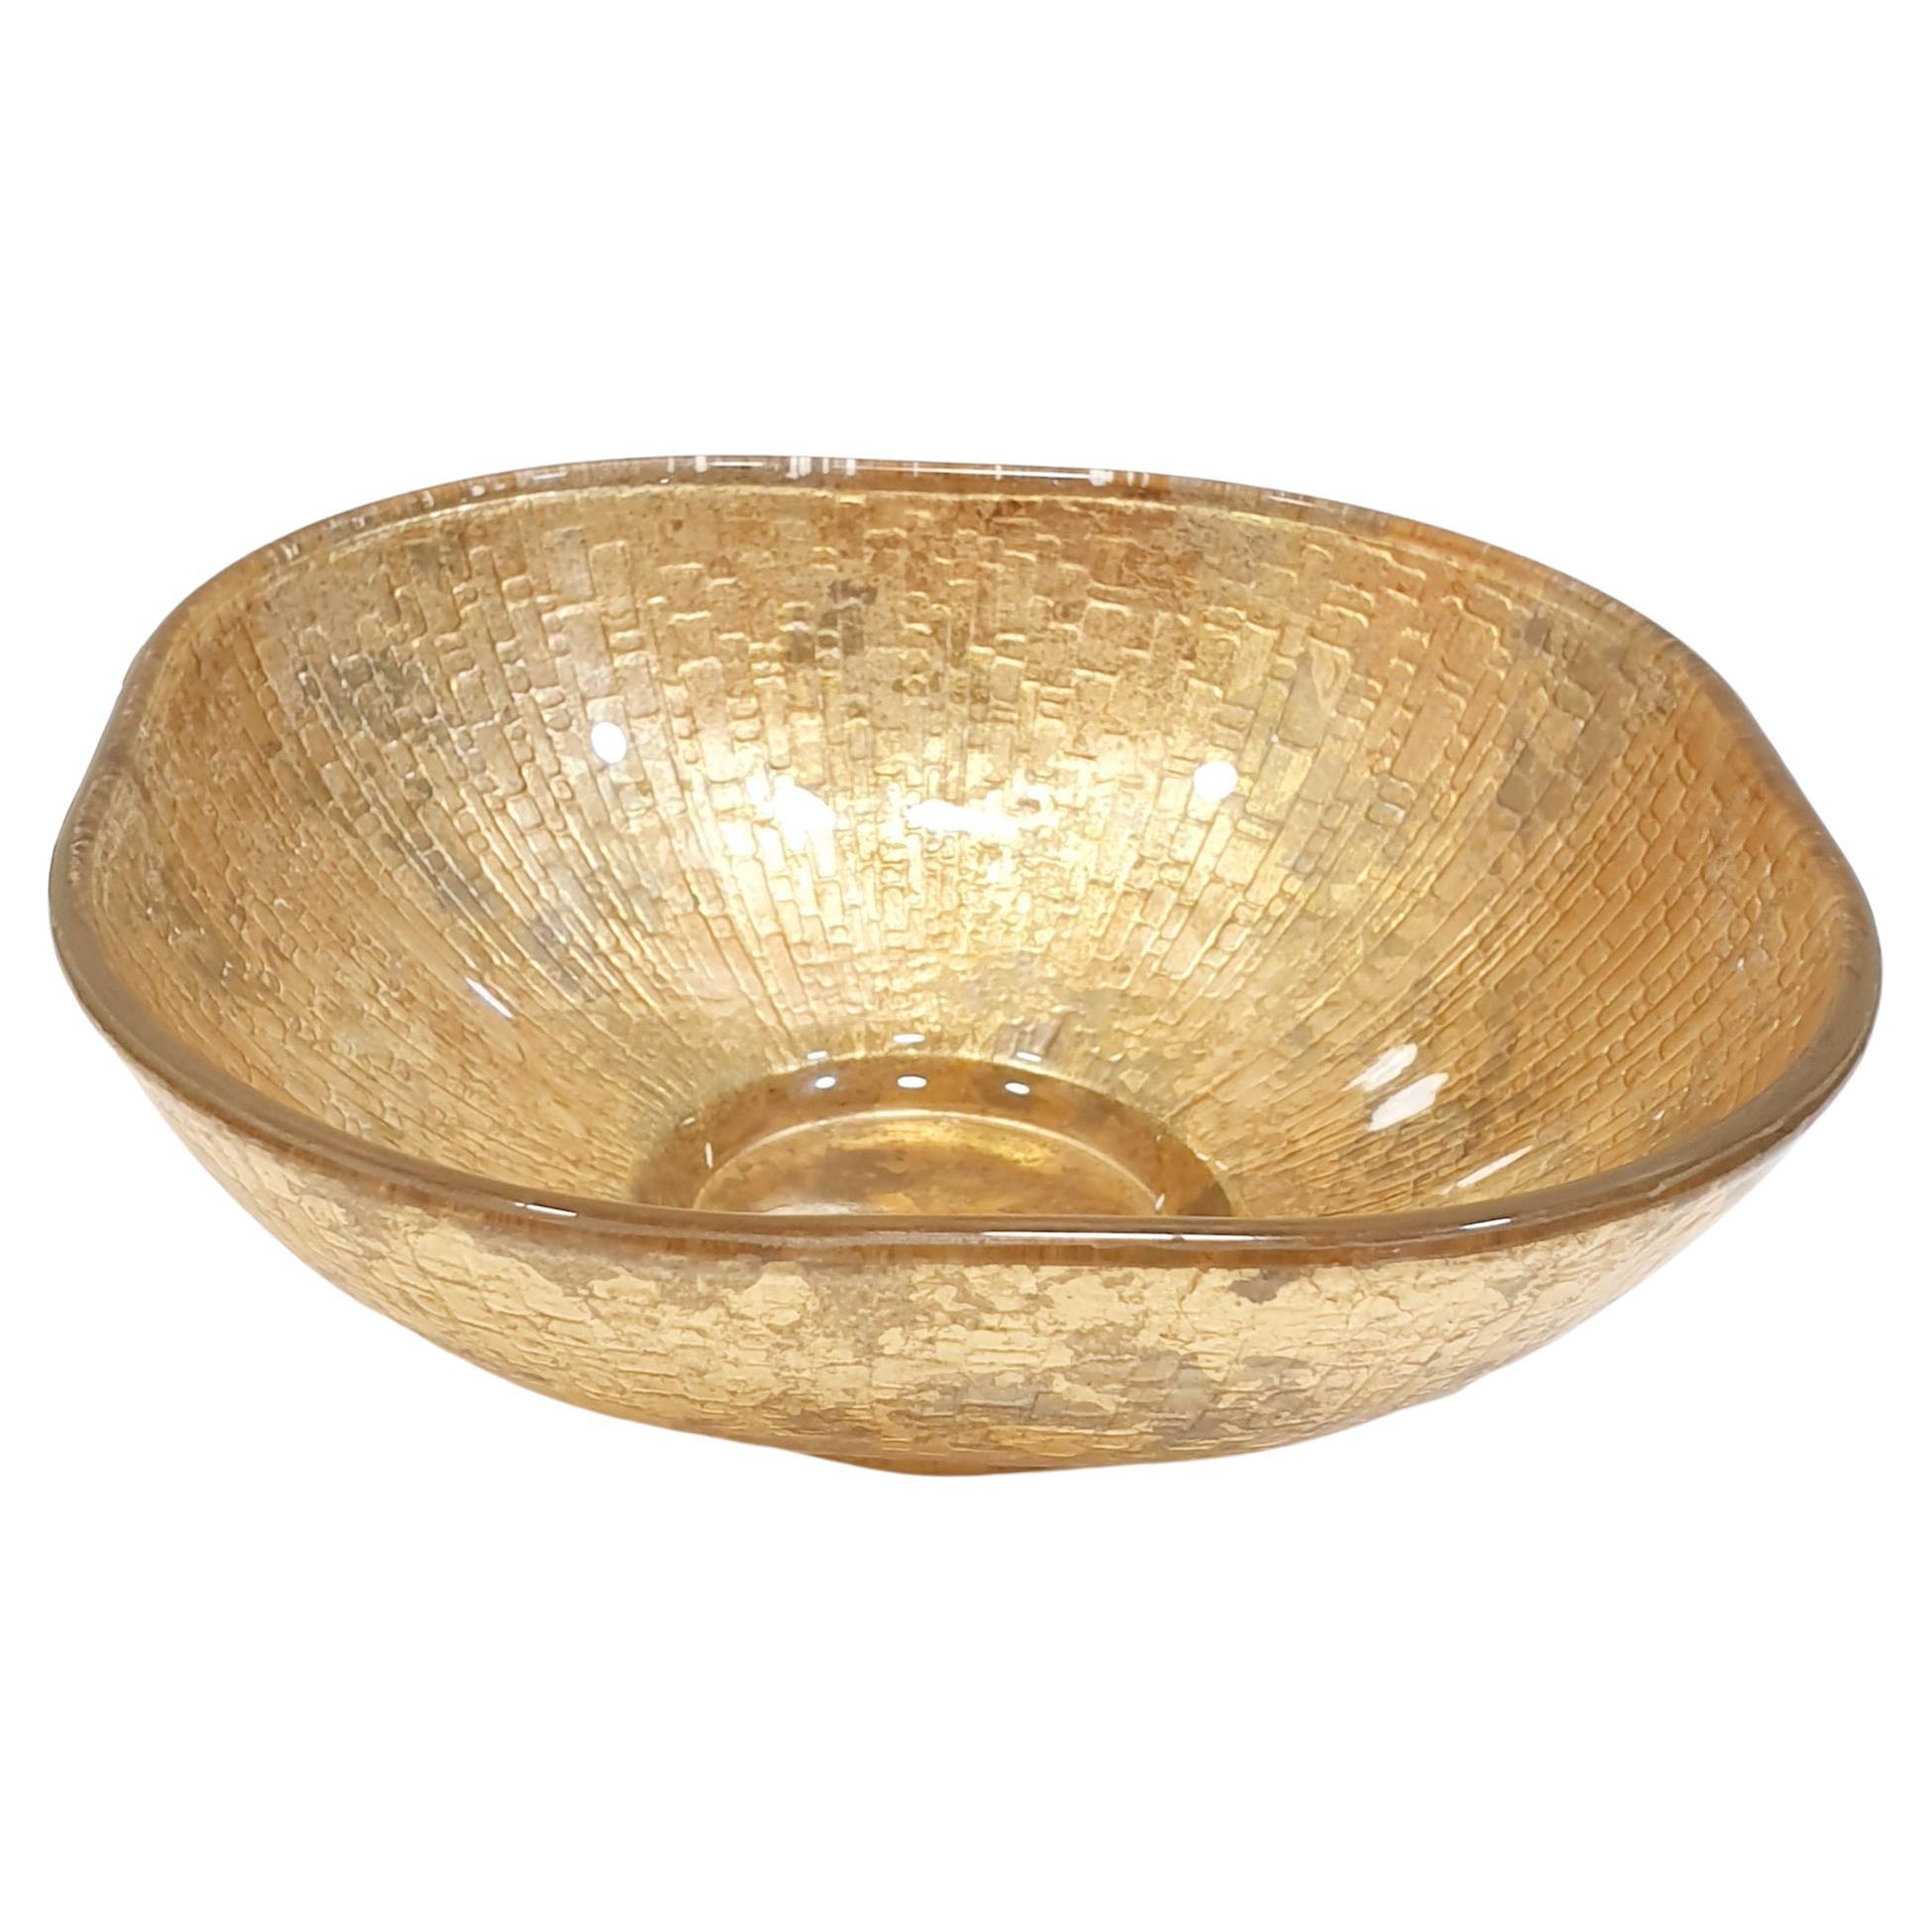 Quadratische Candy Bowl aus Gold mit Craquelé-Schale von Lesley Roy, signiert